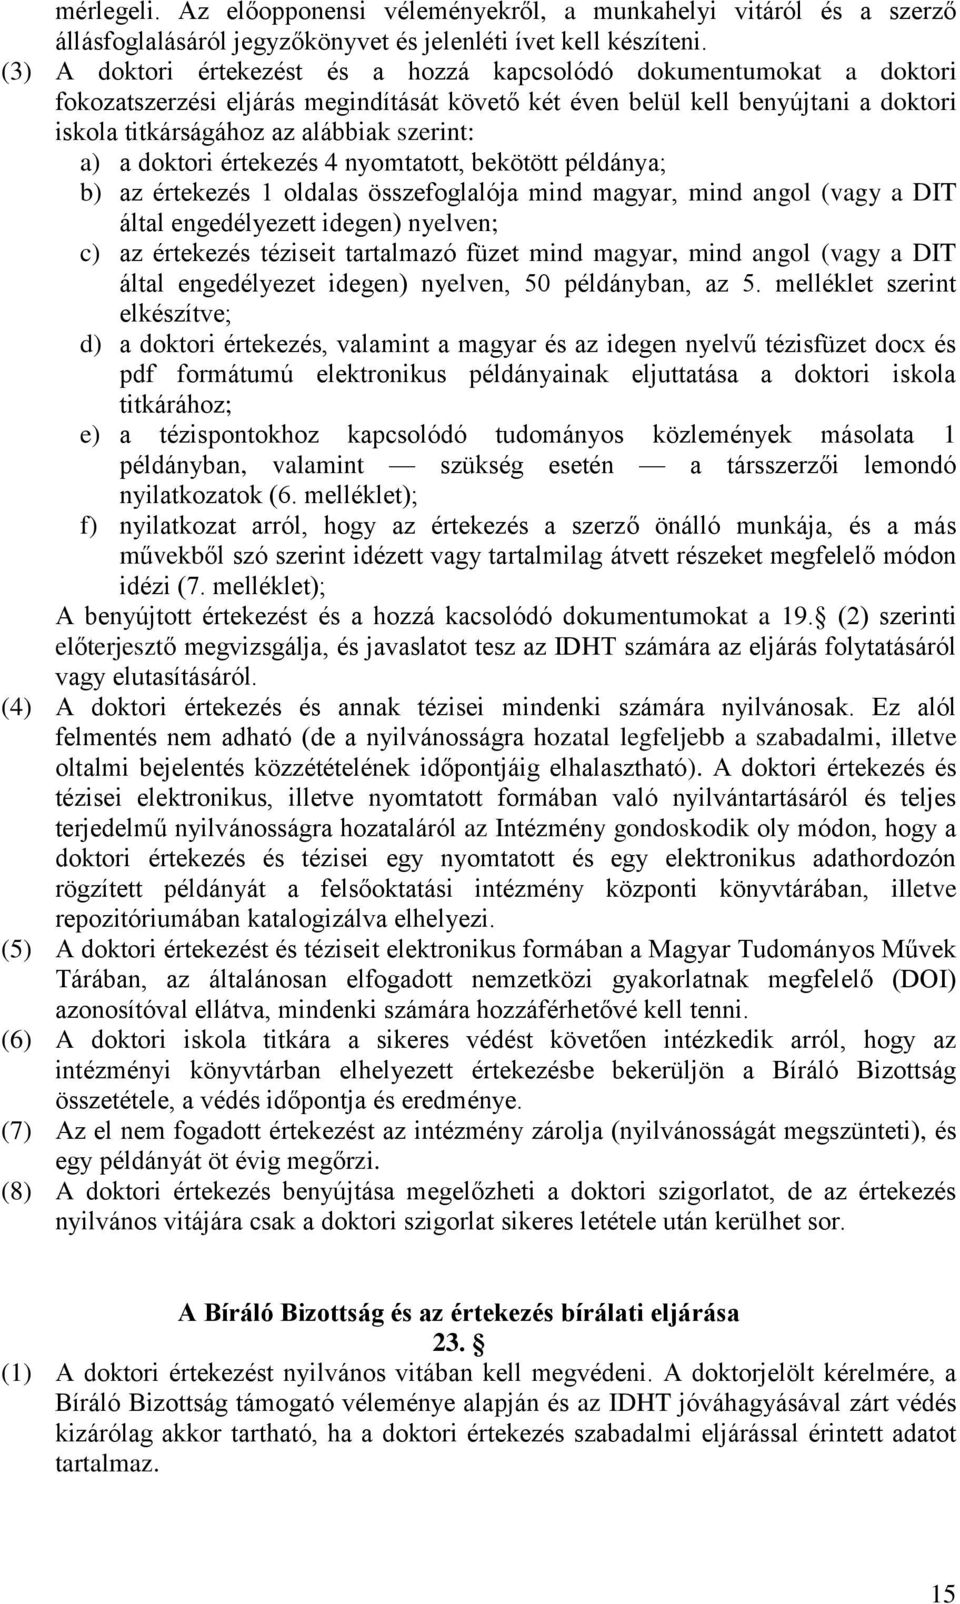 a) a doktori értekezés 4 nyomtatott, bekötött példánya; b) az értekezés 1 oldalas összefoglalója mind magyar, mind angol (vagy a DIT által engedélyezett idegen) nyelven; c) az értekezés téziseit